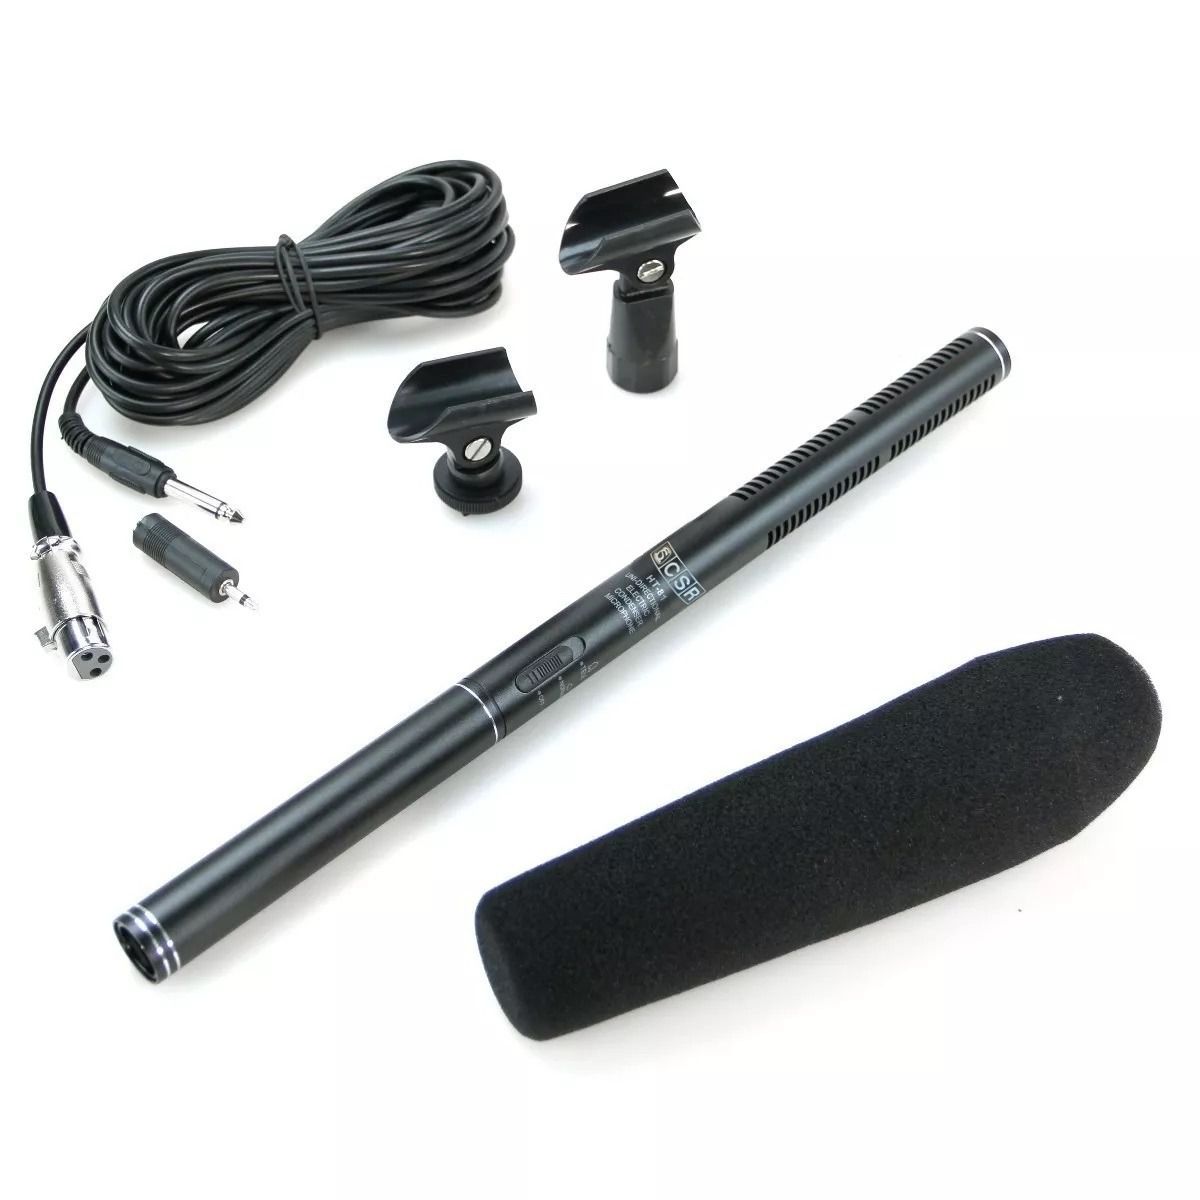 Microfone Shotgun 36cm condensador ulta cardioide CSR HT81